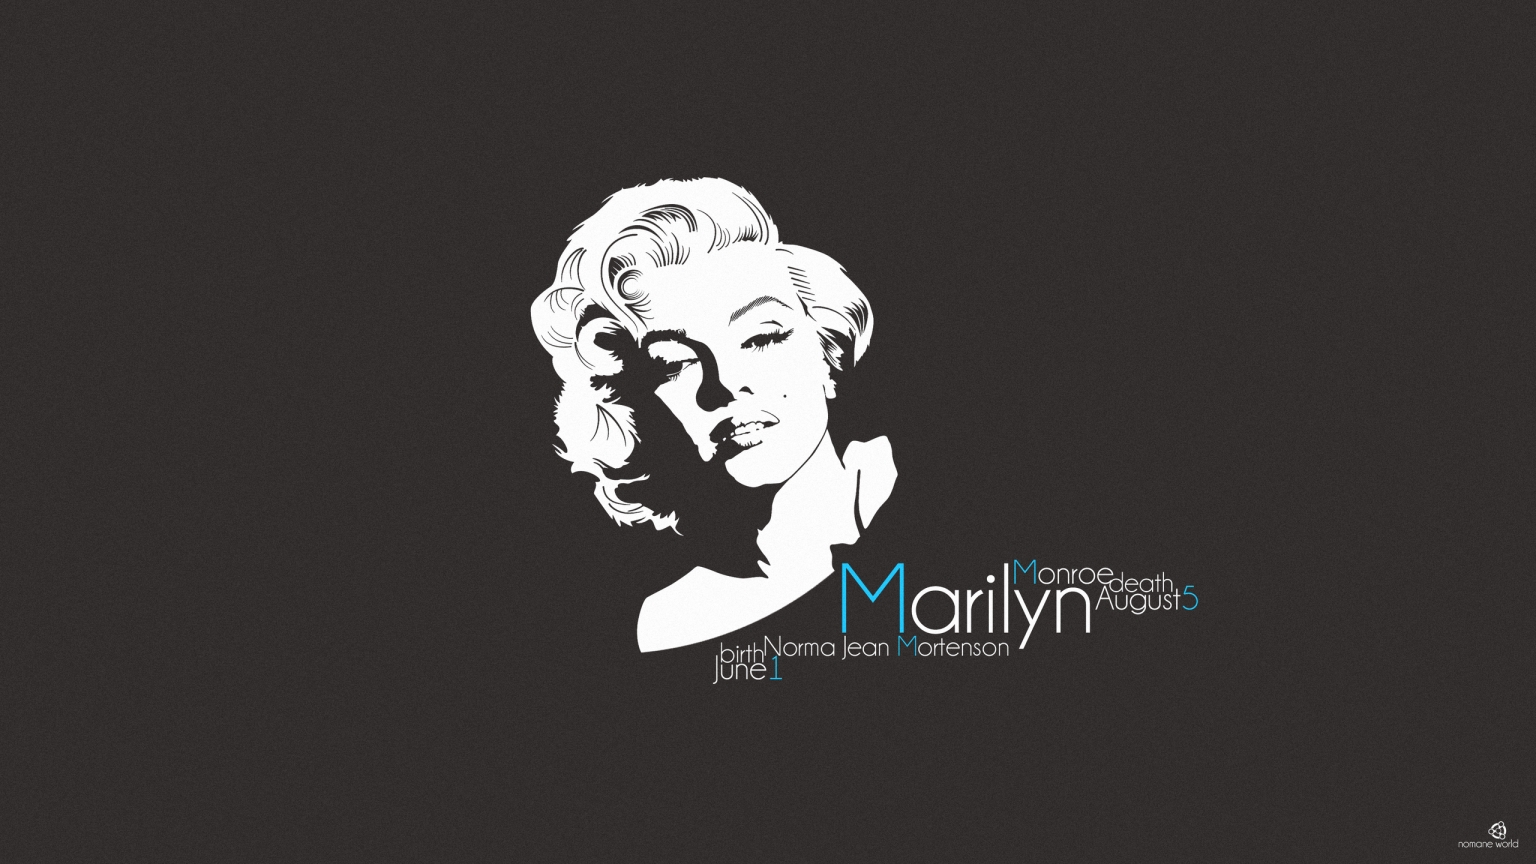 Marilyn Monroe for 1536 x 864 HDTV resolution